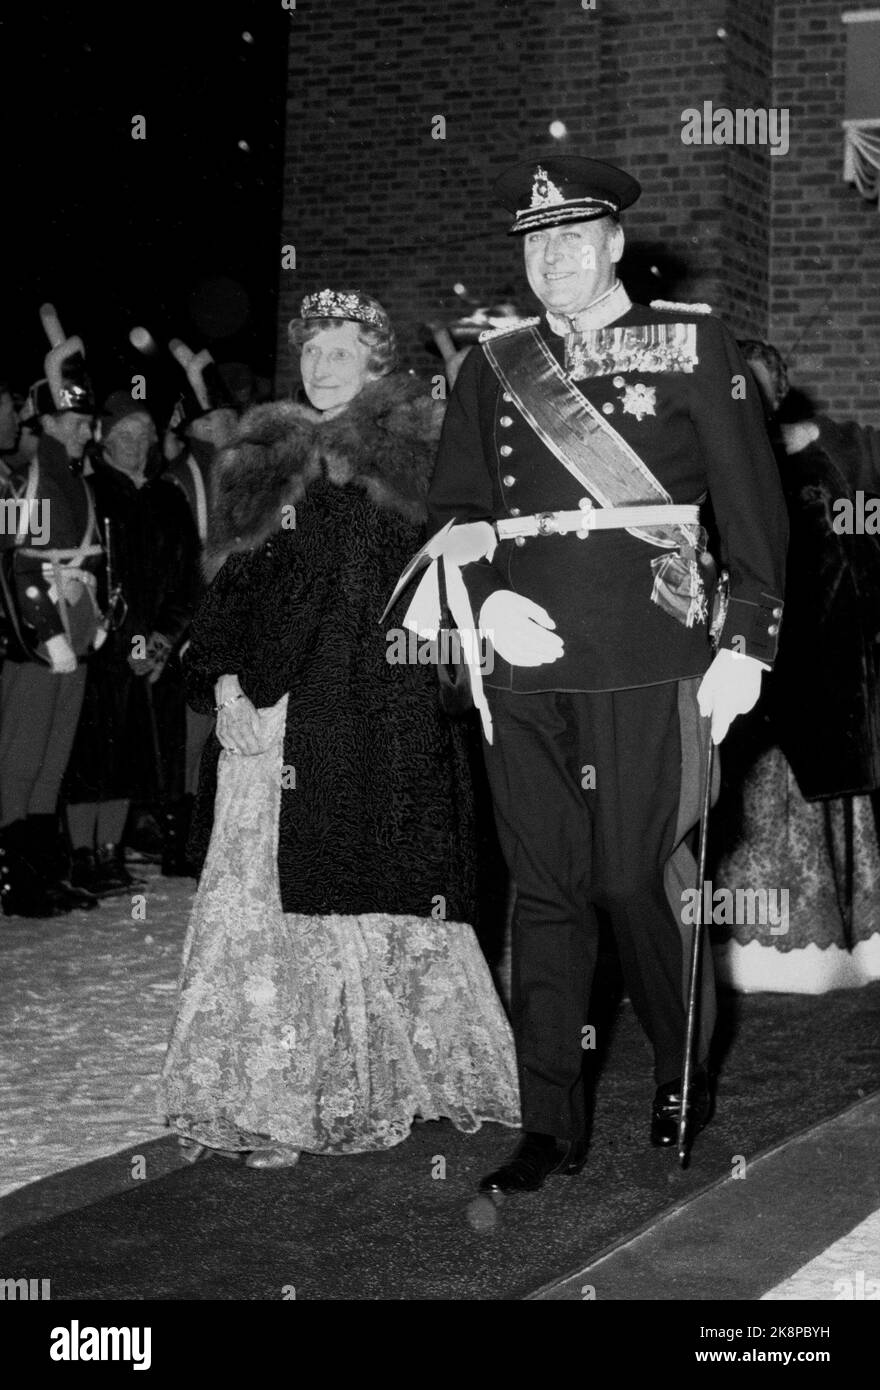 Asker 19610112. La boda de la princesa Astrid. El rey Olav sale de la iglesia Asker con uno de los invitados, Hofjægermesterinde Dagmar Castenskiold, hermana del rey Haakon y tía abuela de la novia. El rey del uniforme, Castenskiold llevando diadem / tiara. (La tiara es idéntica al Bar Marie Cavallier cuando se casó con el Príncipe Joachim de Dinamarca el 24 de mayo de 2008) Foto: NTB / NTB Foto de stock